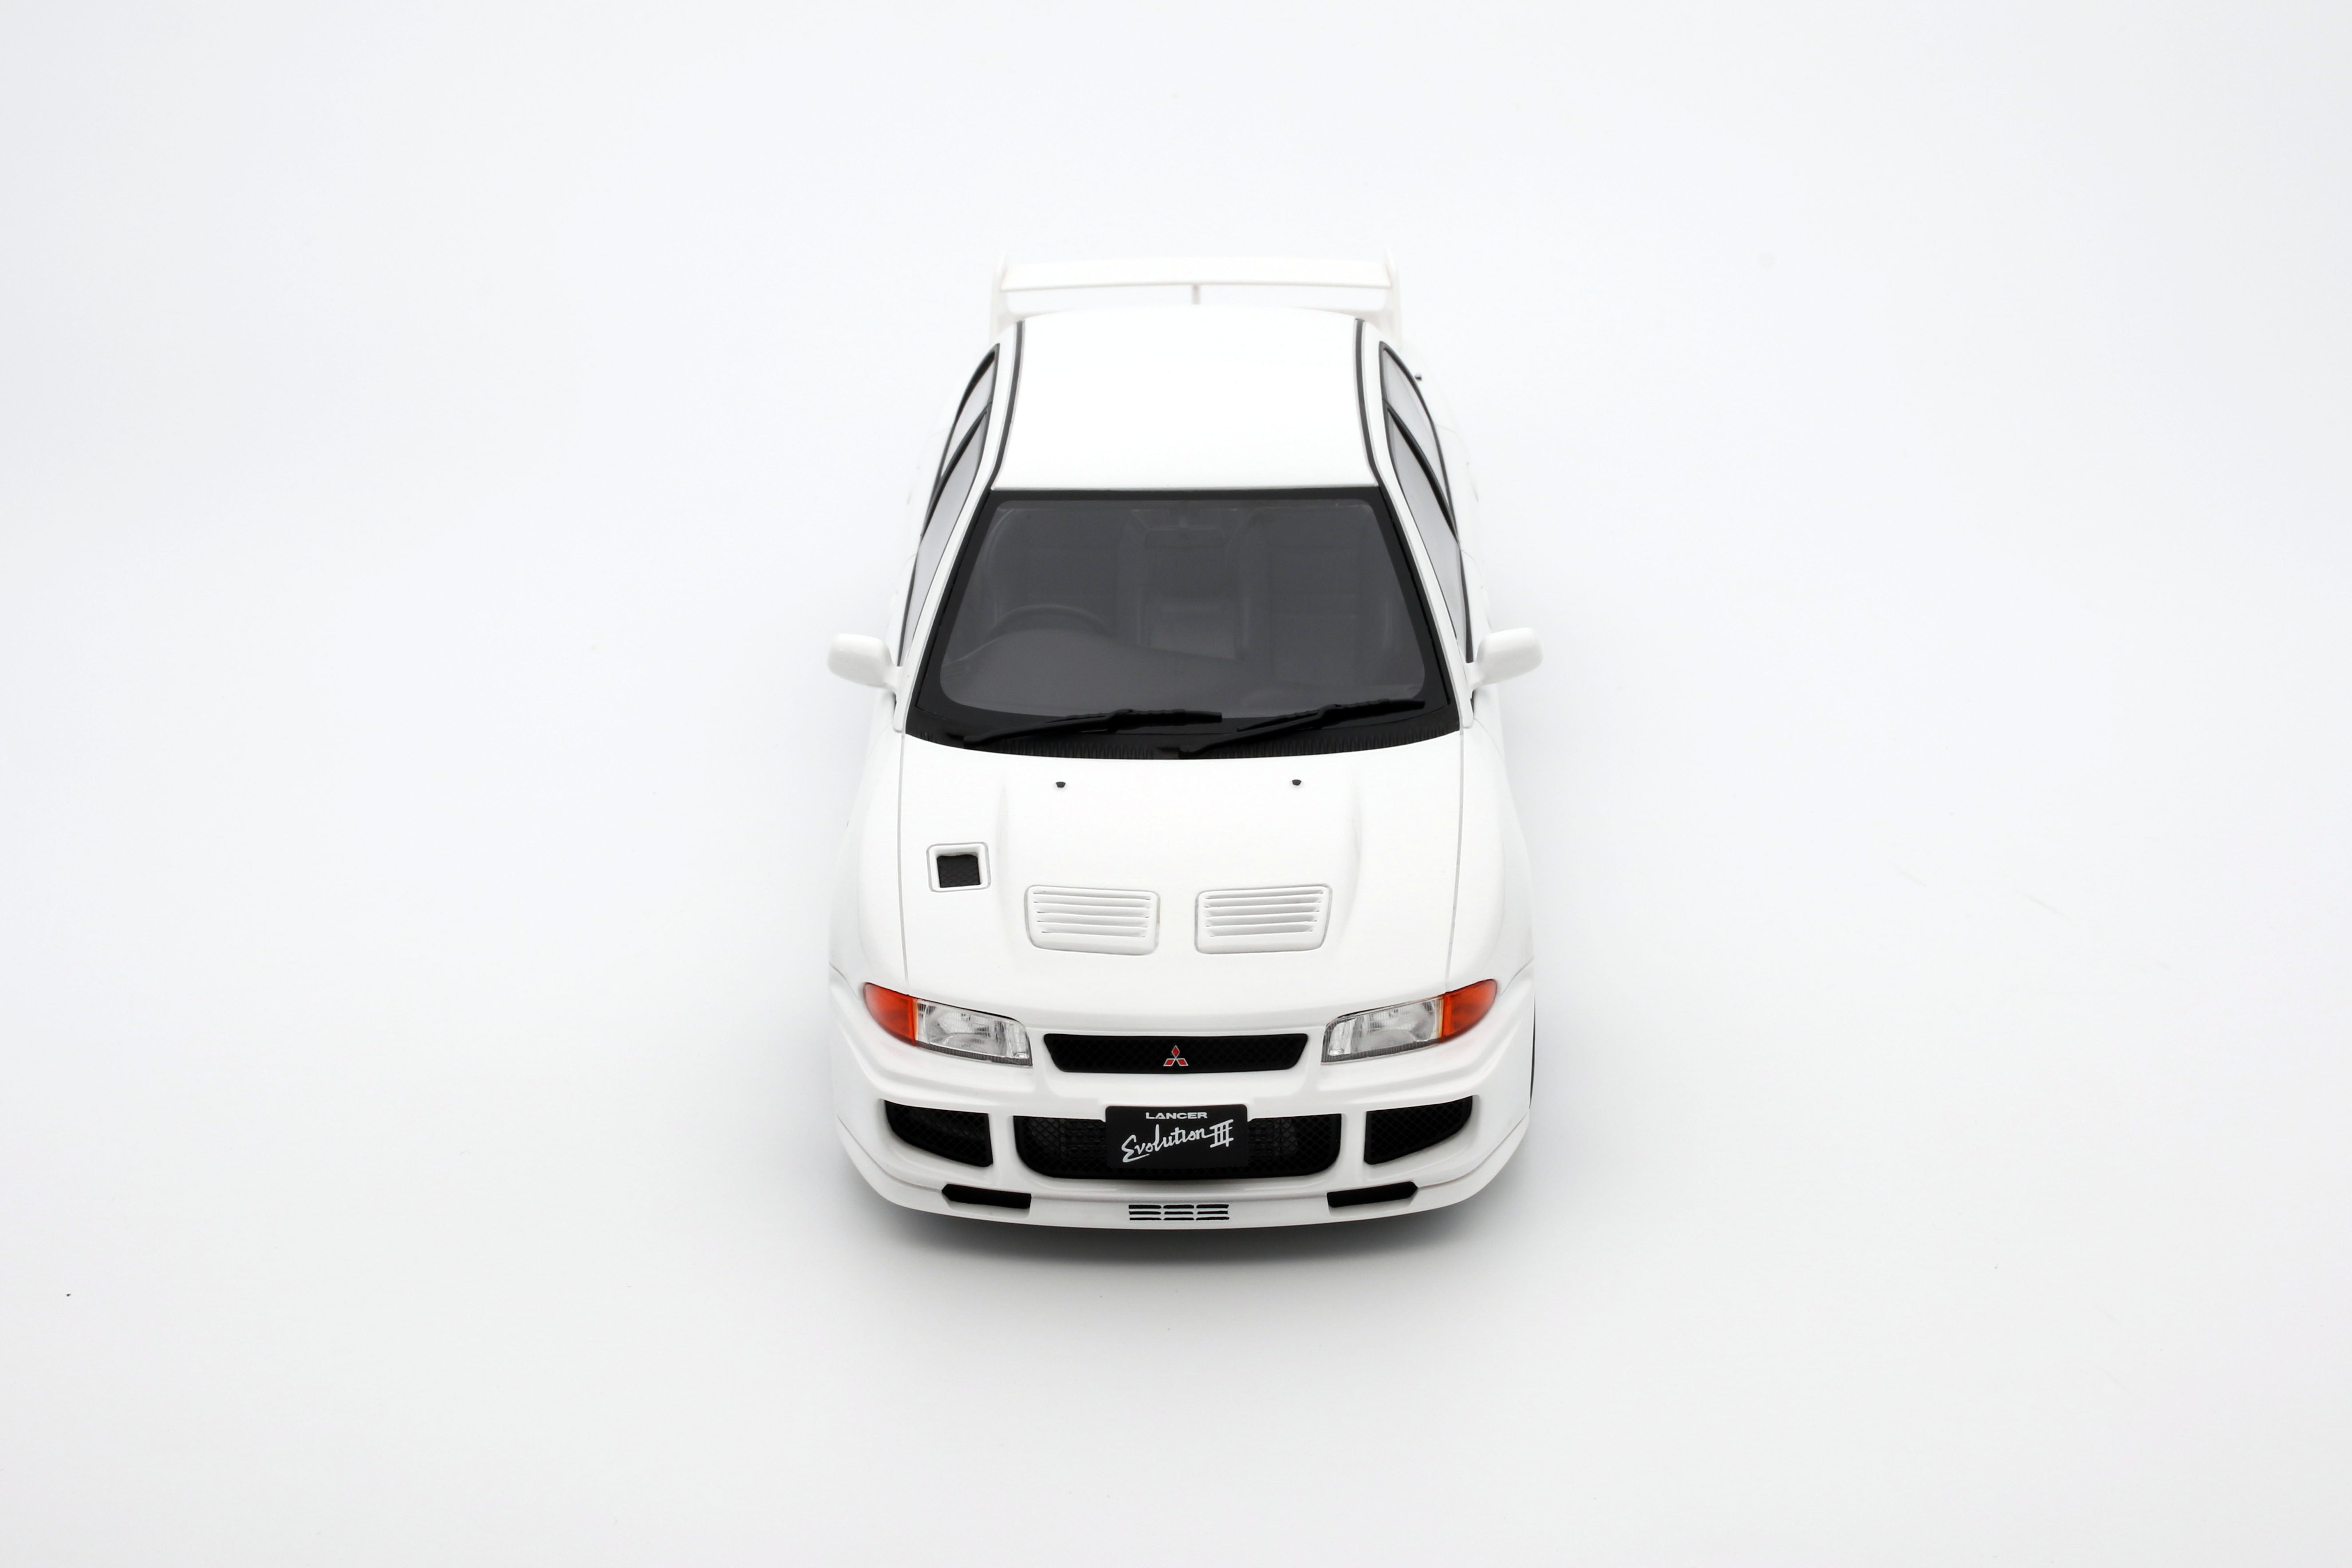 Ottomobile 1/18 Mitsubishi Lancer Evolution III White 1995 [OT1065]